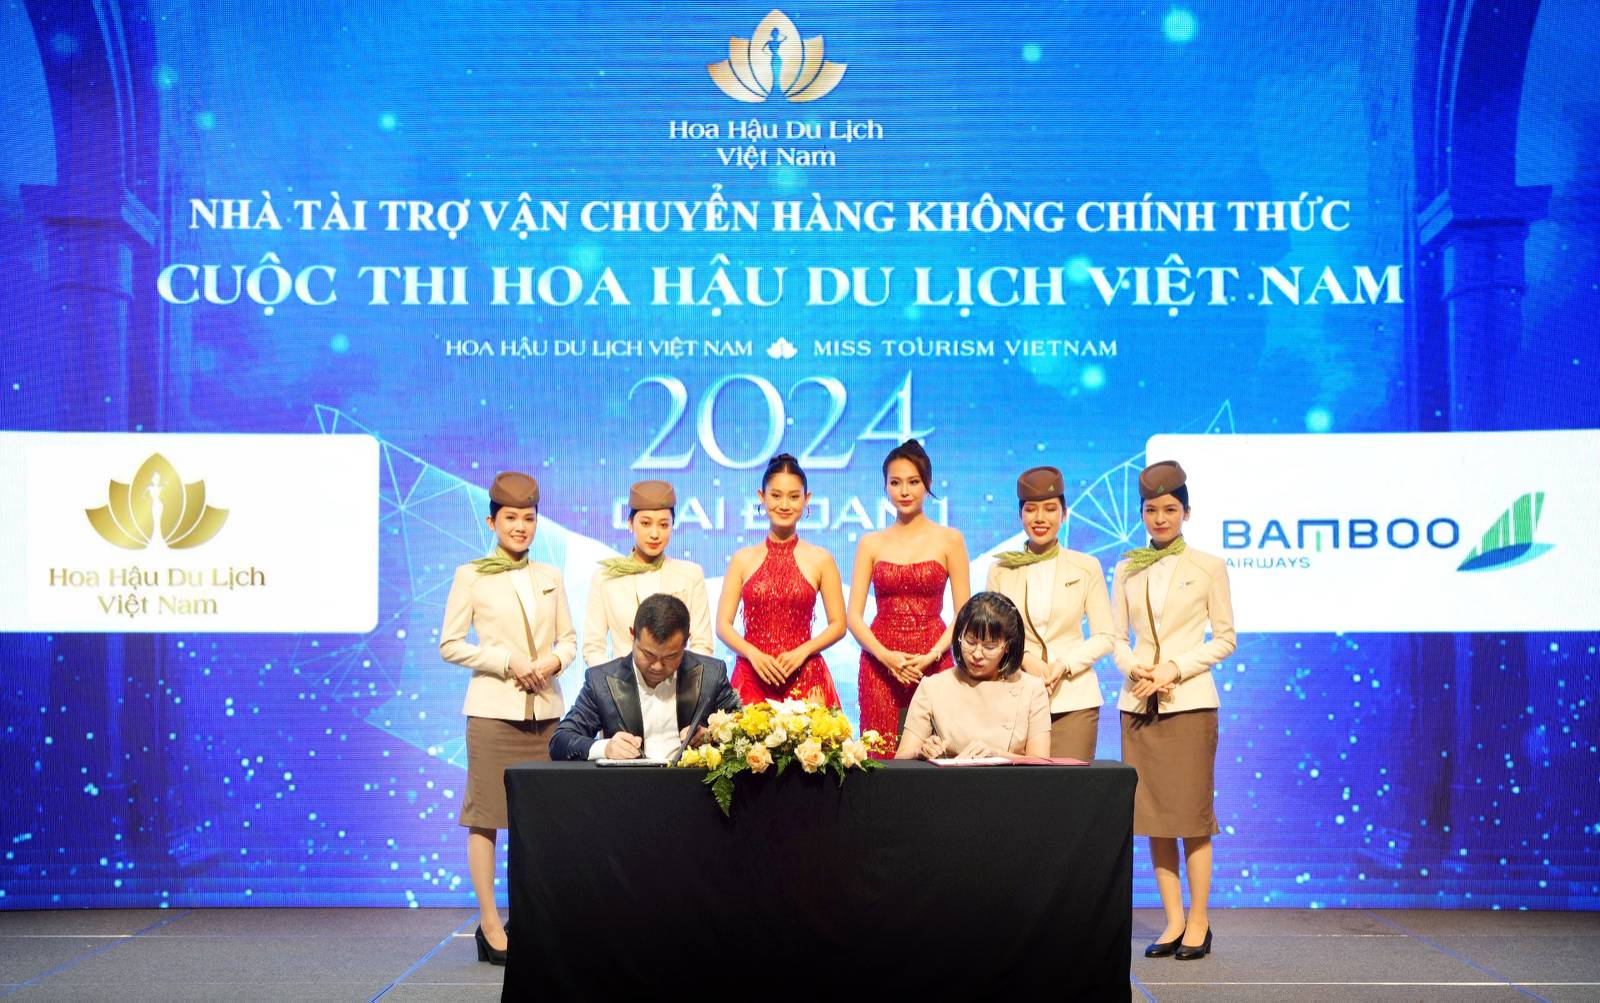 Đại diện BTC Hoa hậu Du lịch Việt Nam 2024 và đại diện Bamboo Airways ký kết hợp tác tại họp báo